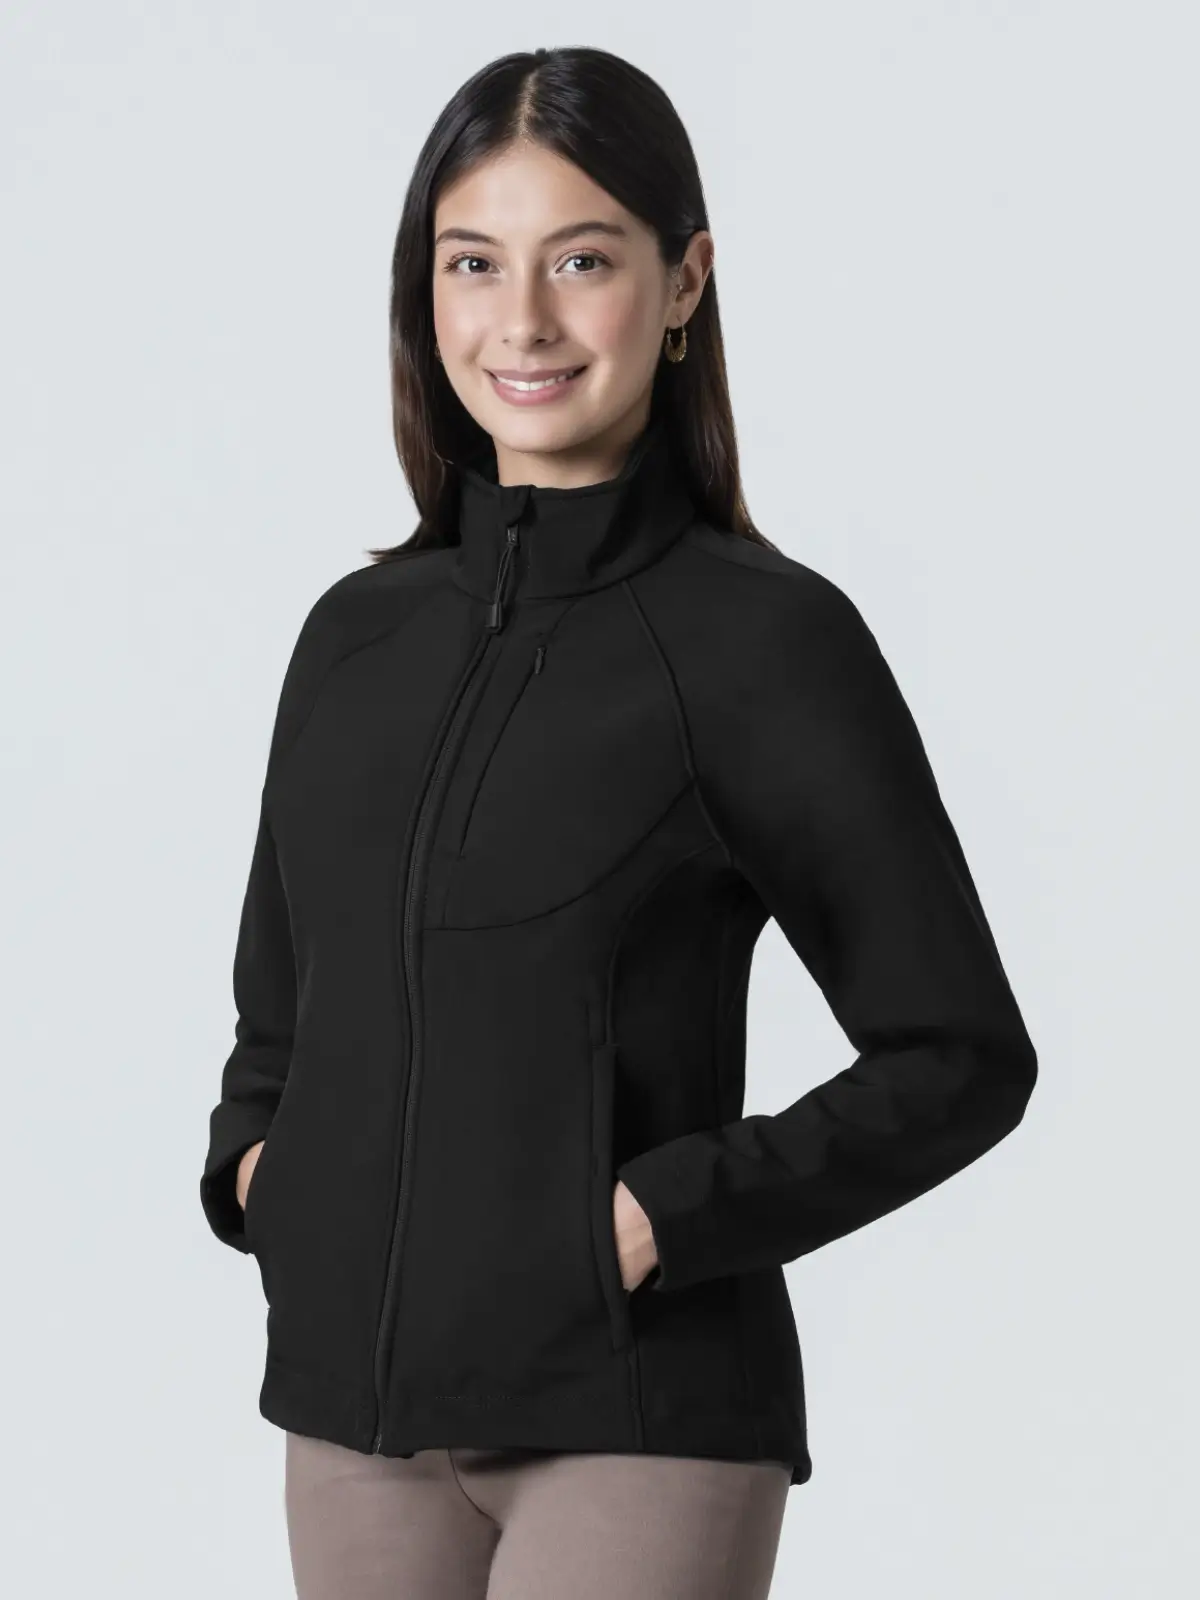 neoprene jacket for women